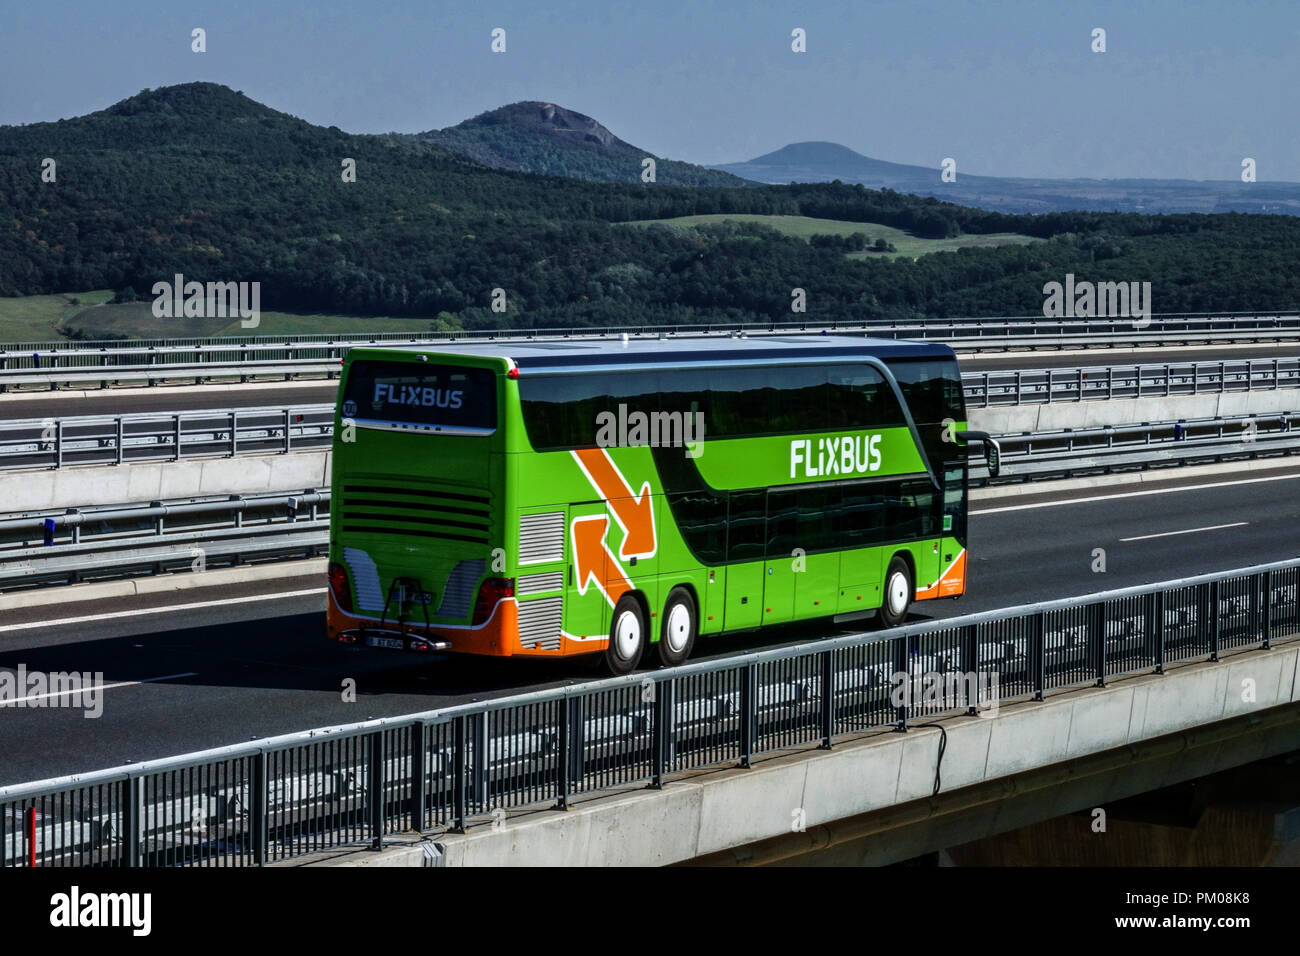 FlixBus auf einer Autobahnbrücke Landaussicht, Tschechische Republik Stockfoto